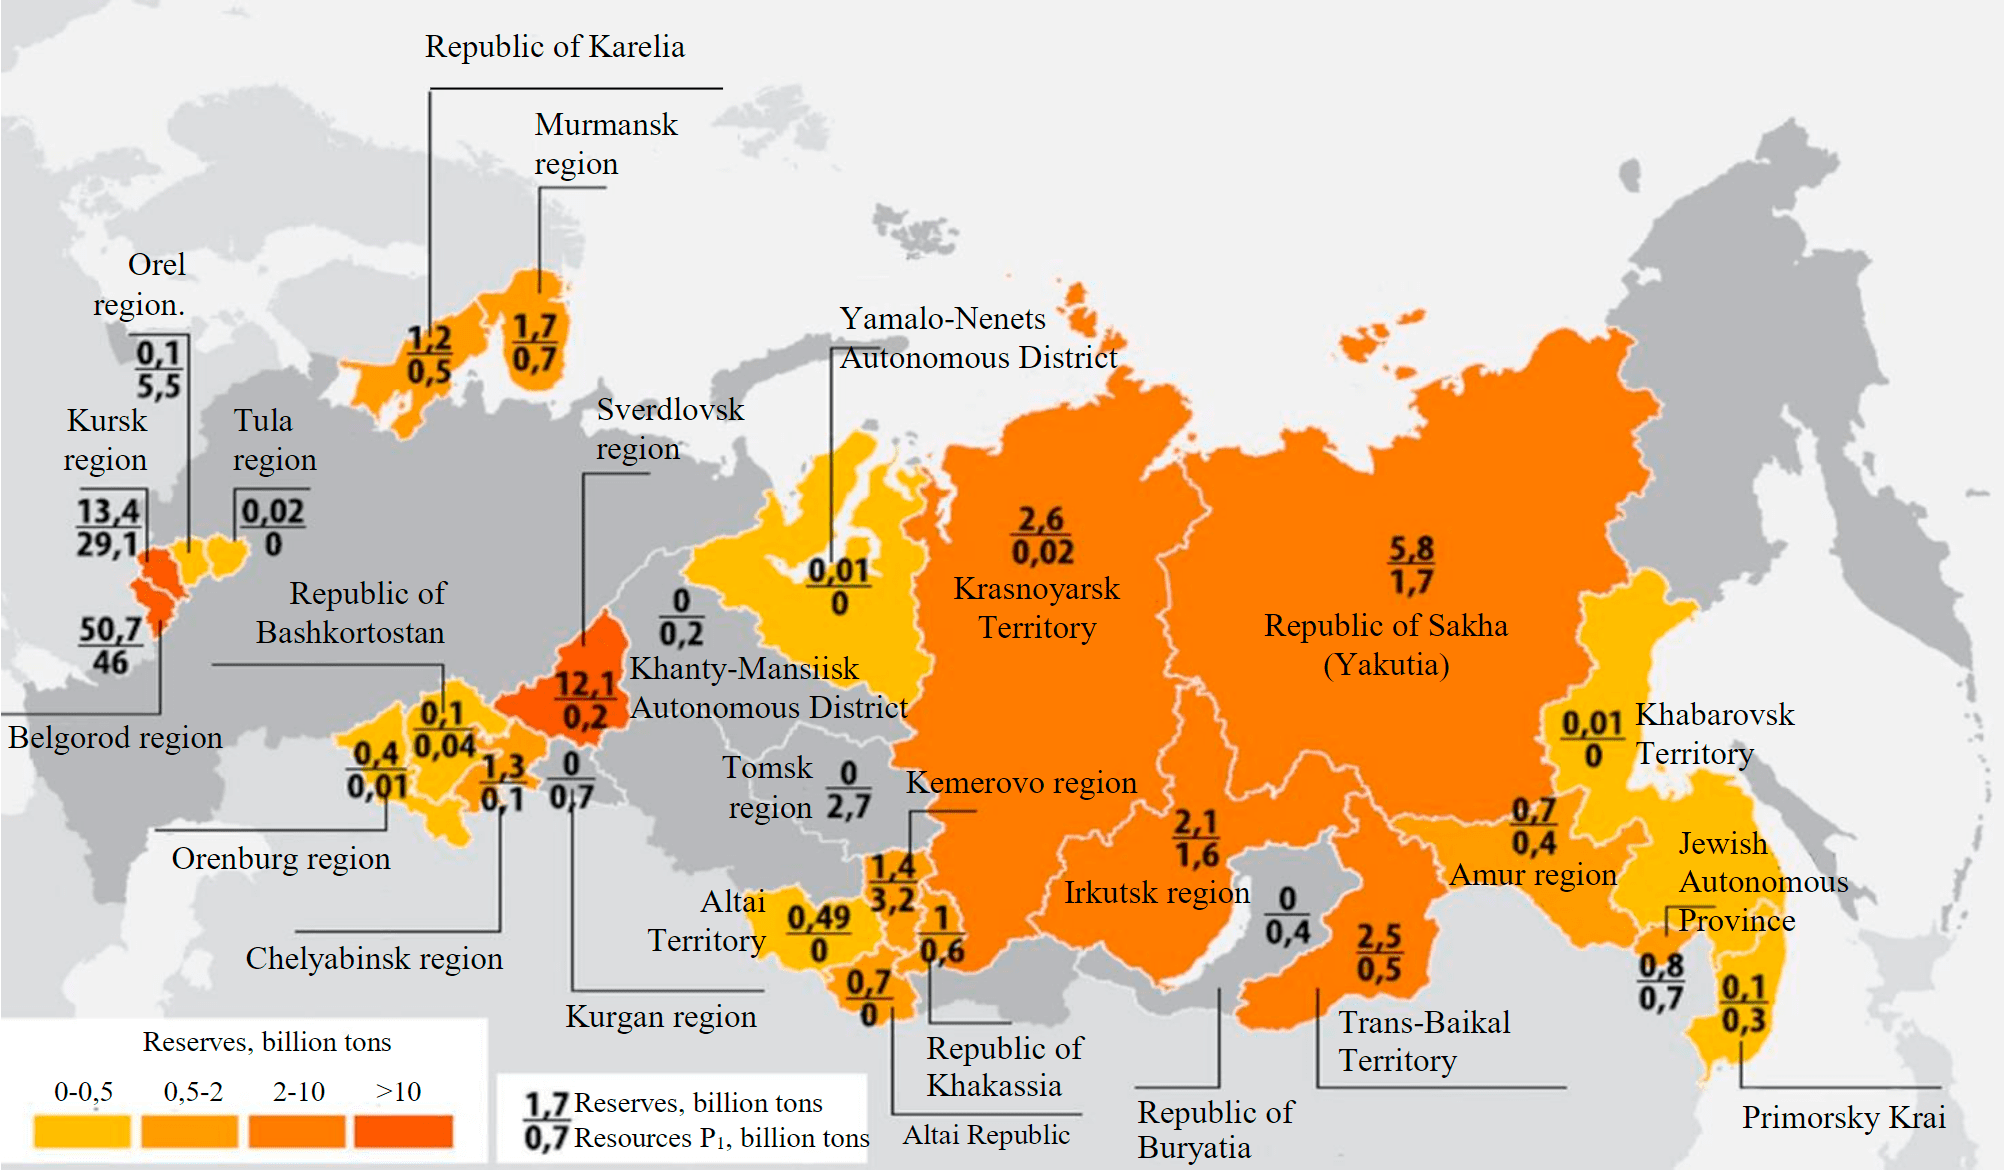 Какие области россии богатые